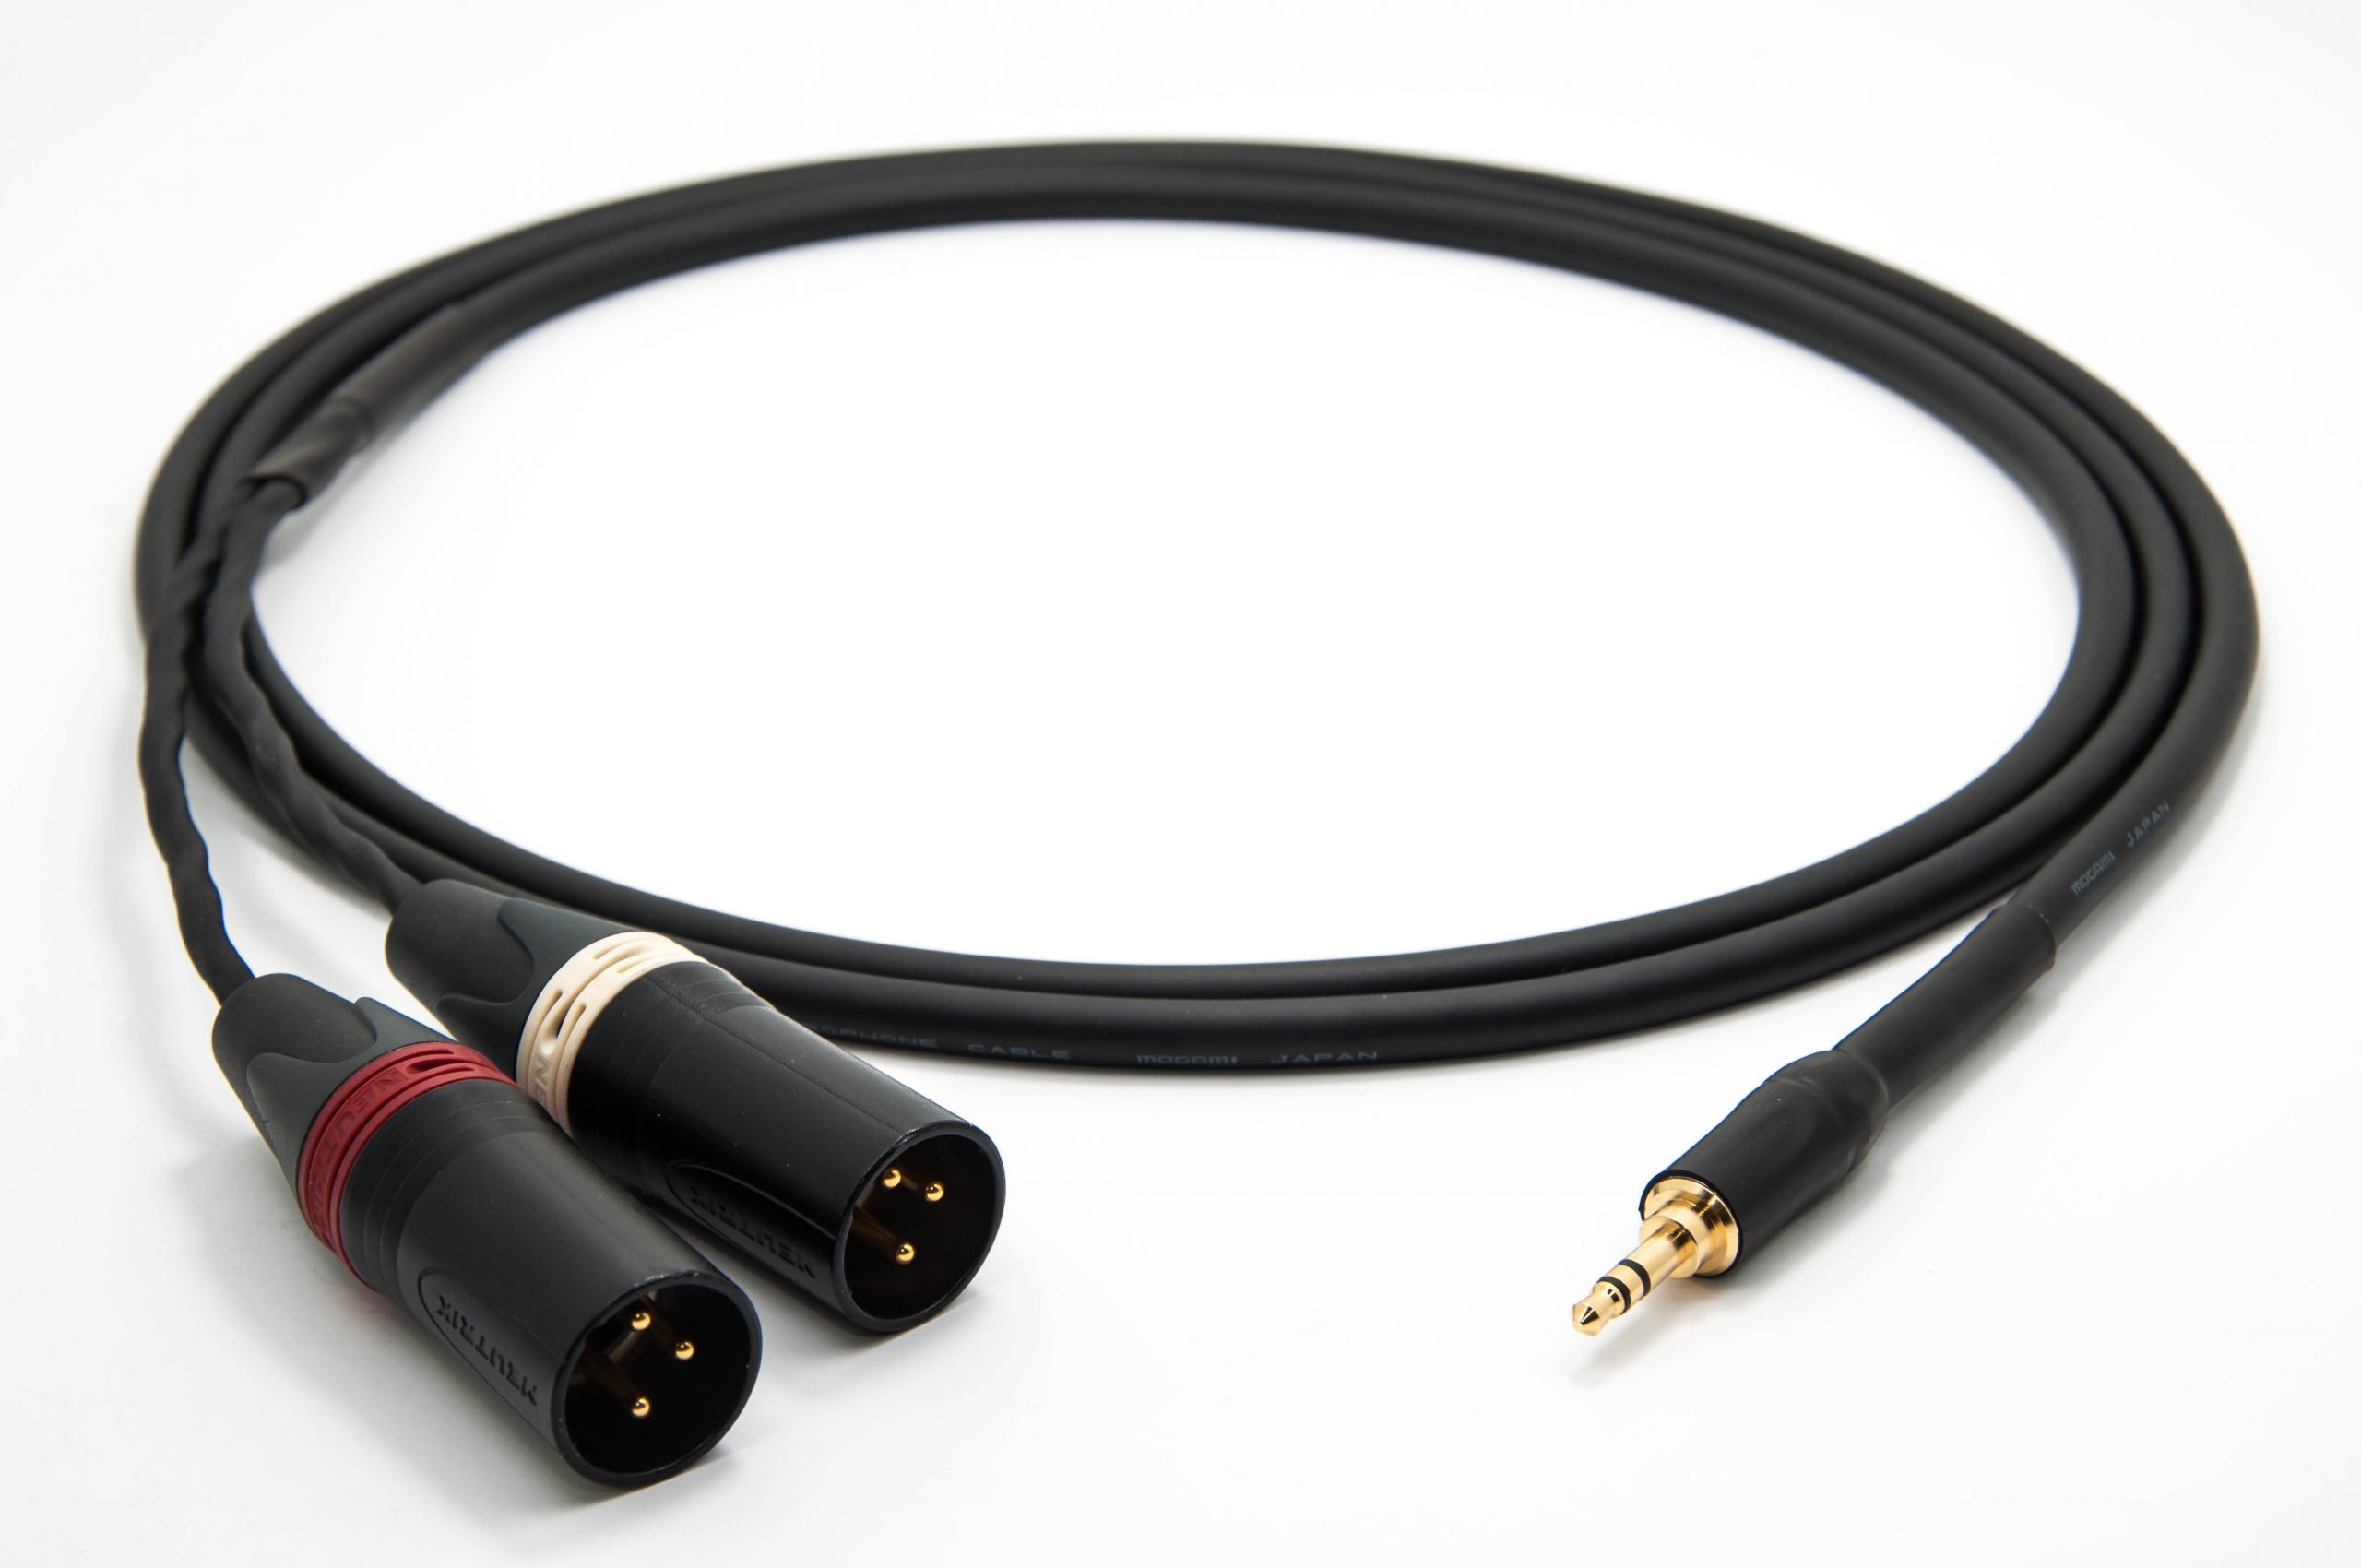 Mogami 2534 Quad Câble Audio Professionnel symétrique Neutrik Gold XLR femelle 6,3mm TRS 0,5 m HiFi 